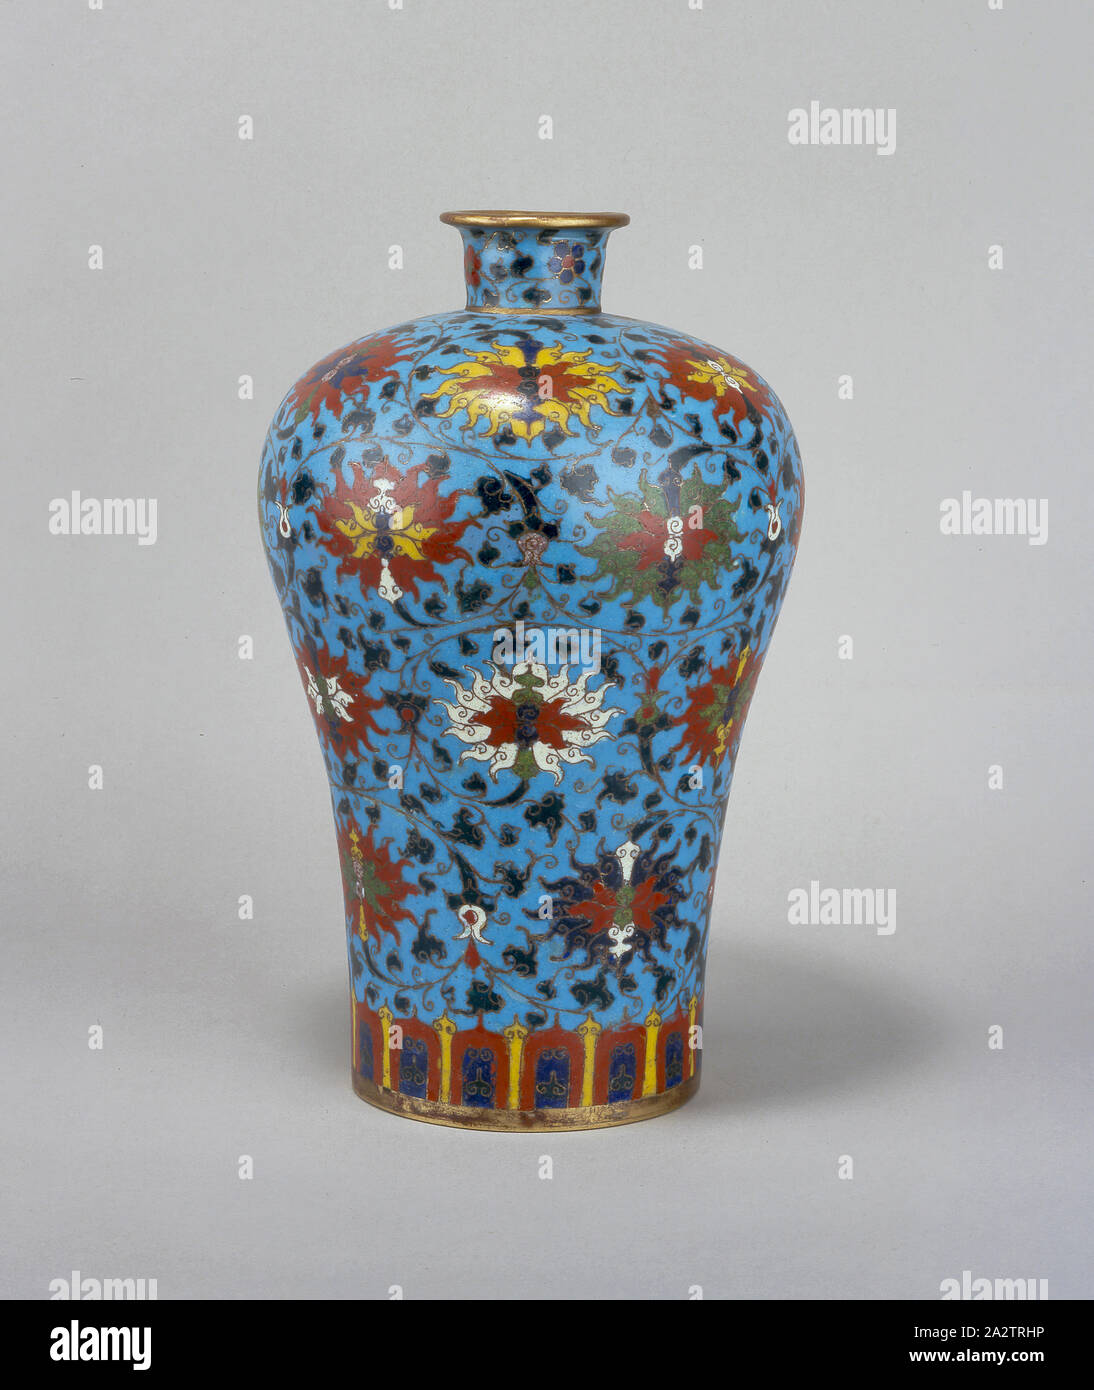 Vase cloisonné avec floral design, Inconnu, dynastie Ming (1550-1600), cloisonné, Art asiatique Banque D'Images